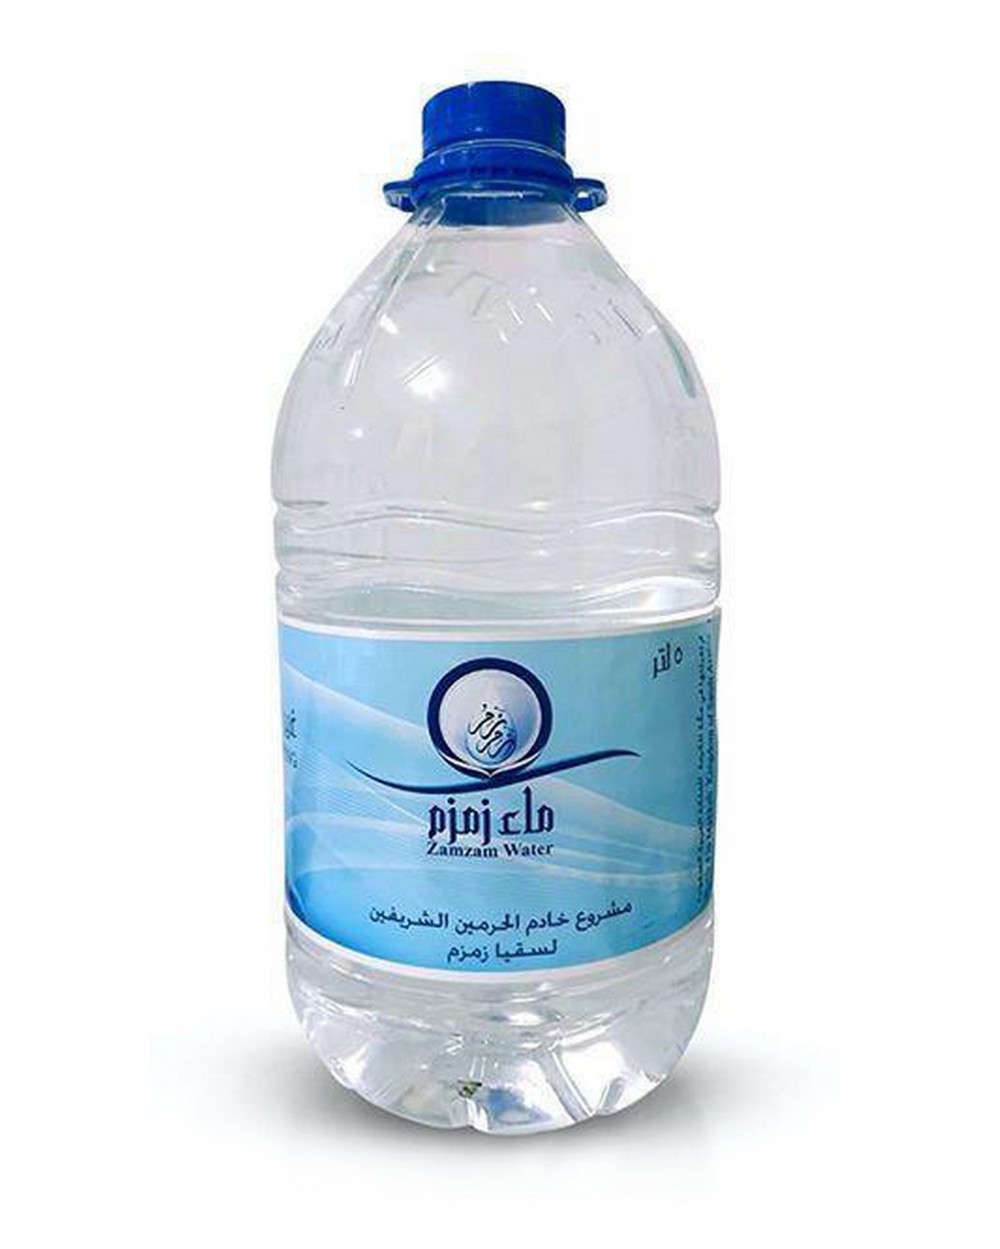 Zamzam Water 5 Liters